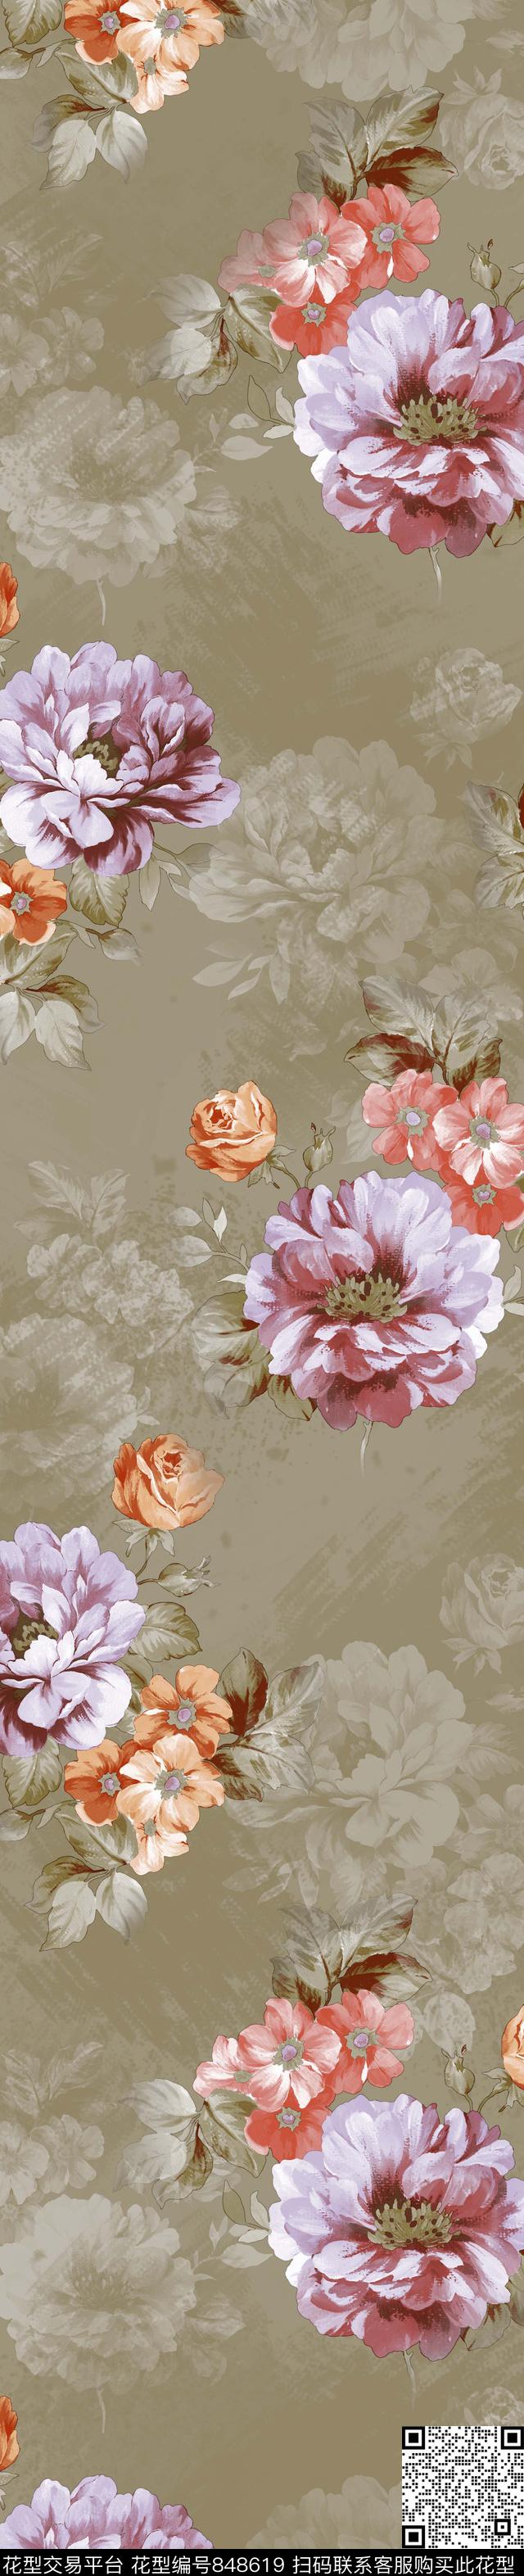 YJH170510h.jpg - 848619 - 牡丹 花卉 窗帘 - 传统印花花型 － 窗帘花型设计 － 瓦栏